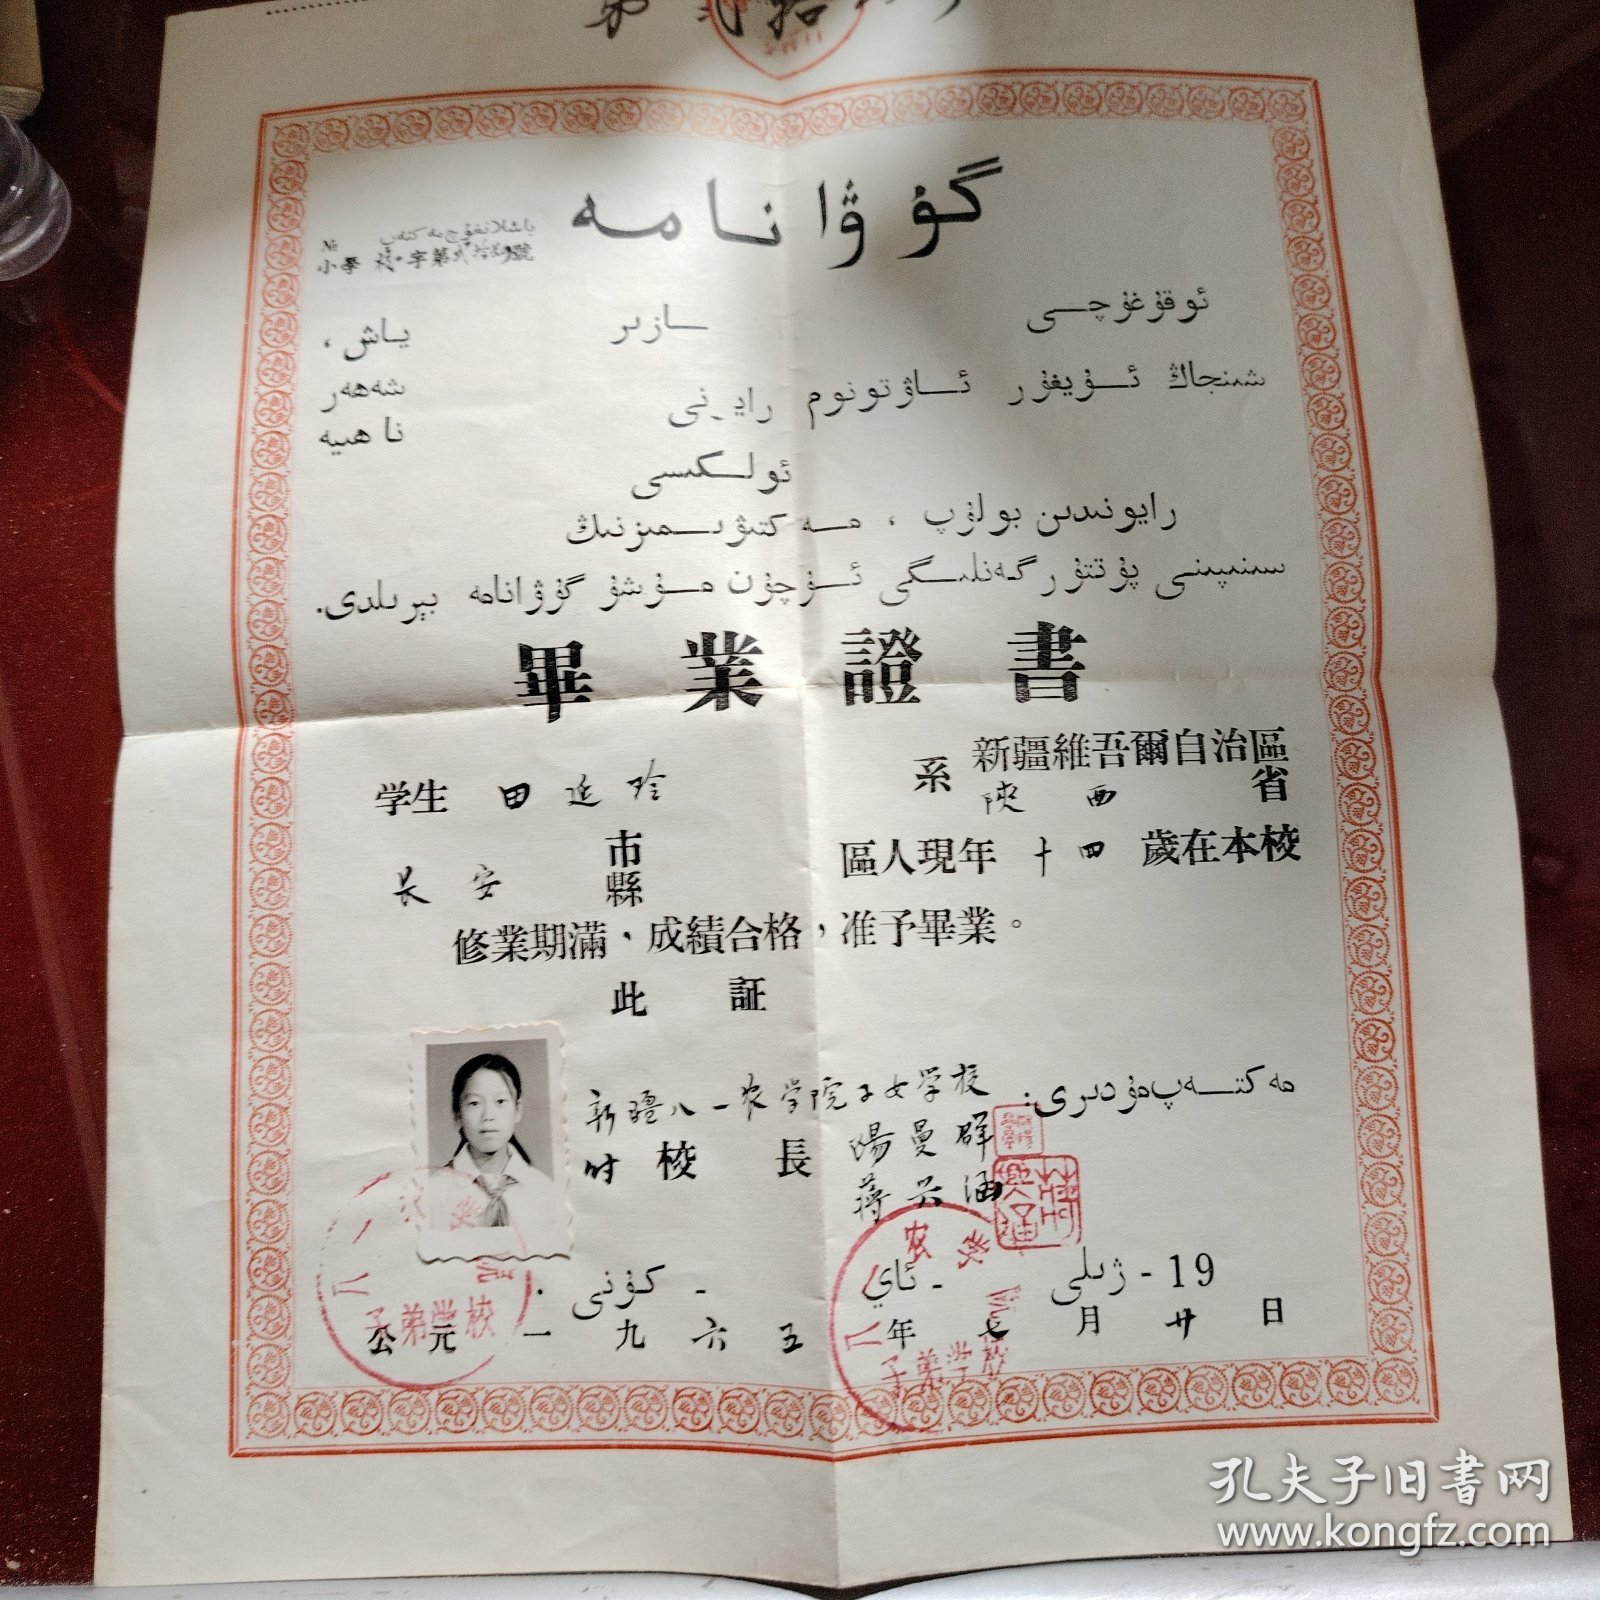 新疆八一农学院子女学校 毕业证书 学生田延玲 1965年7月20日 有少数民族语言 有本人照片 品相95左右